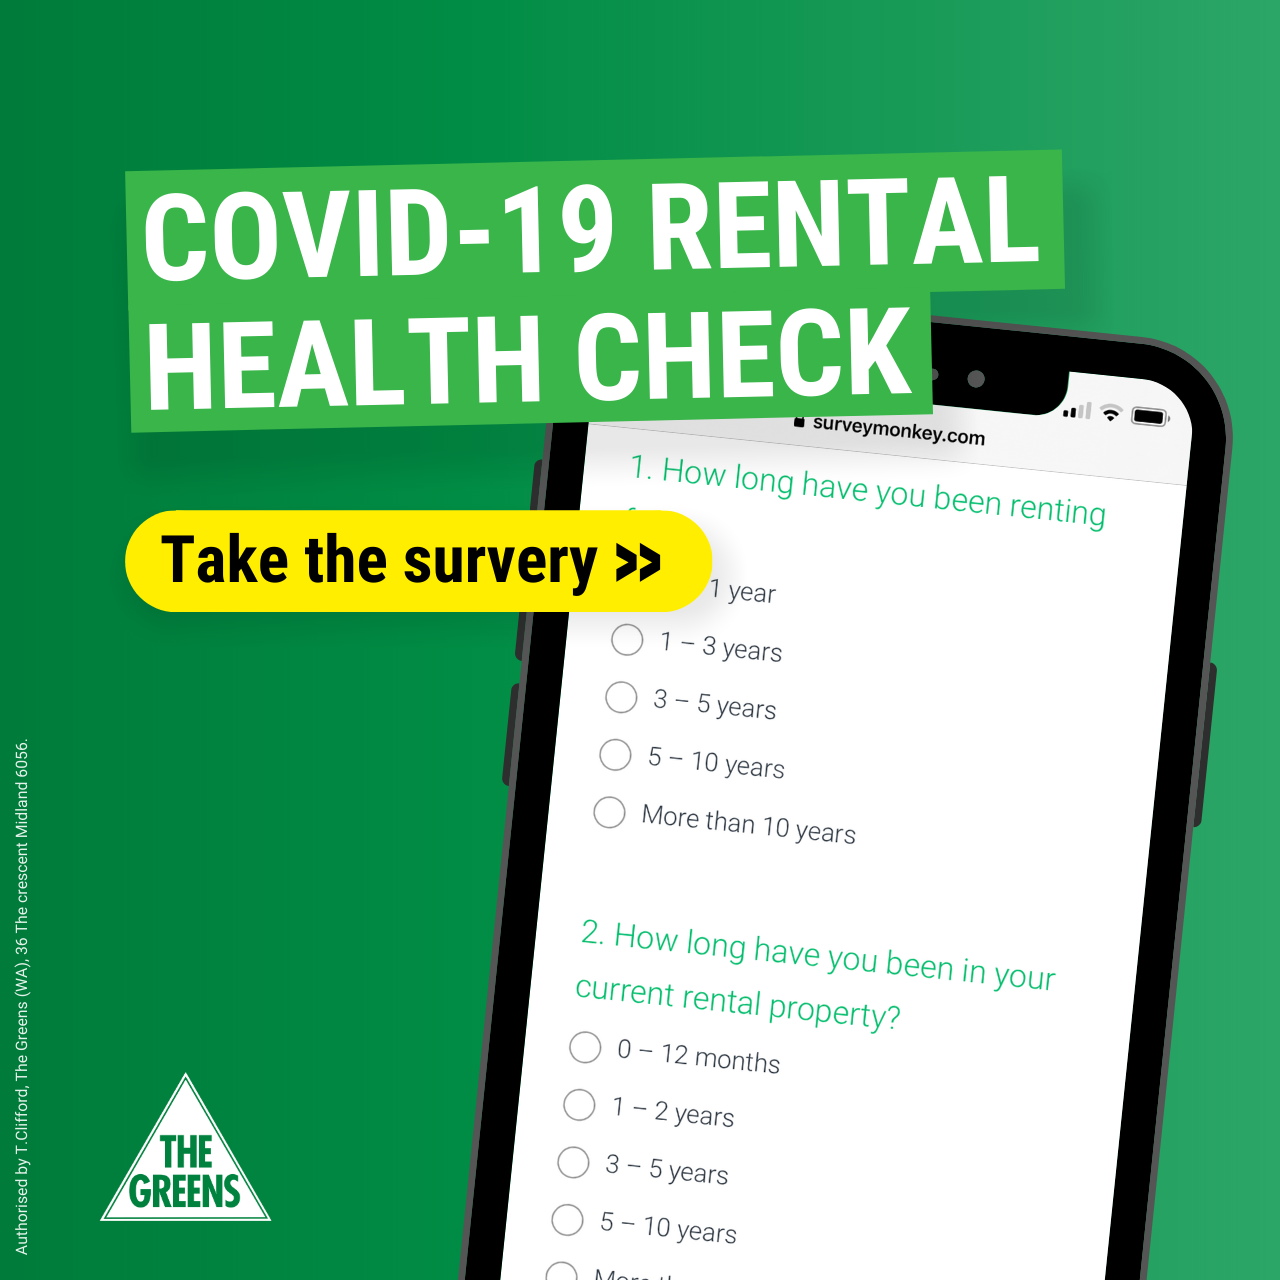 Covid rental health check